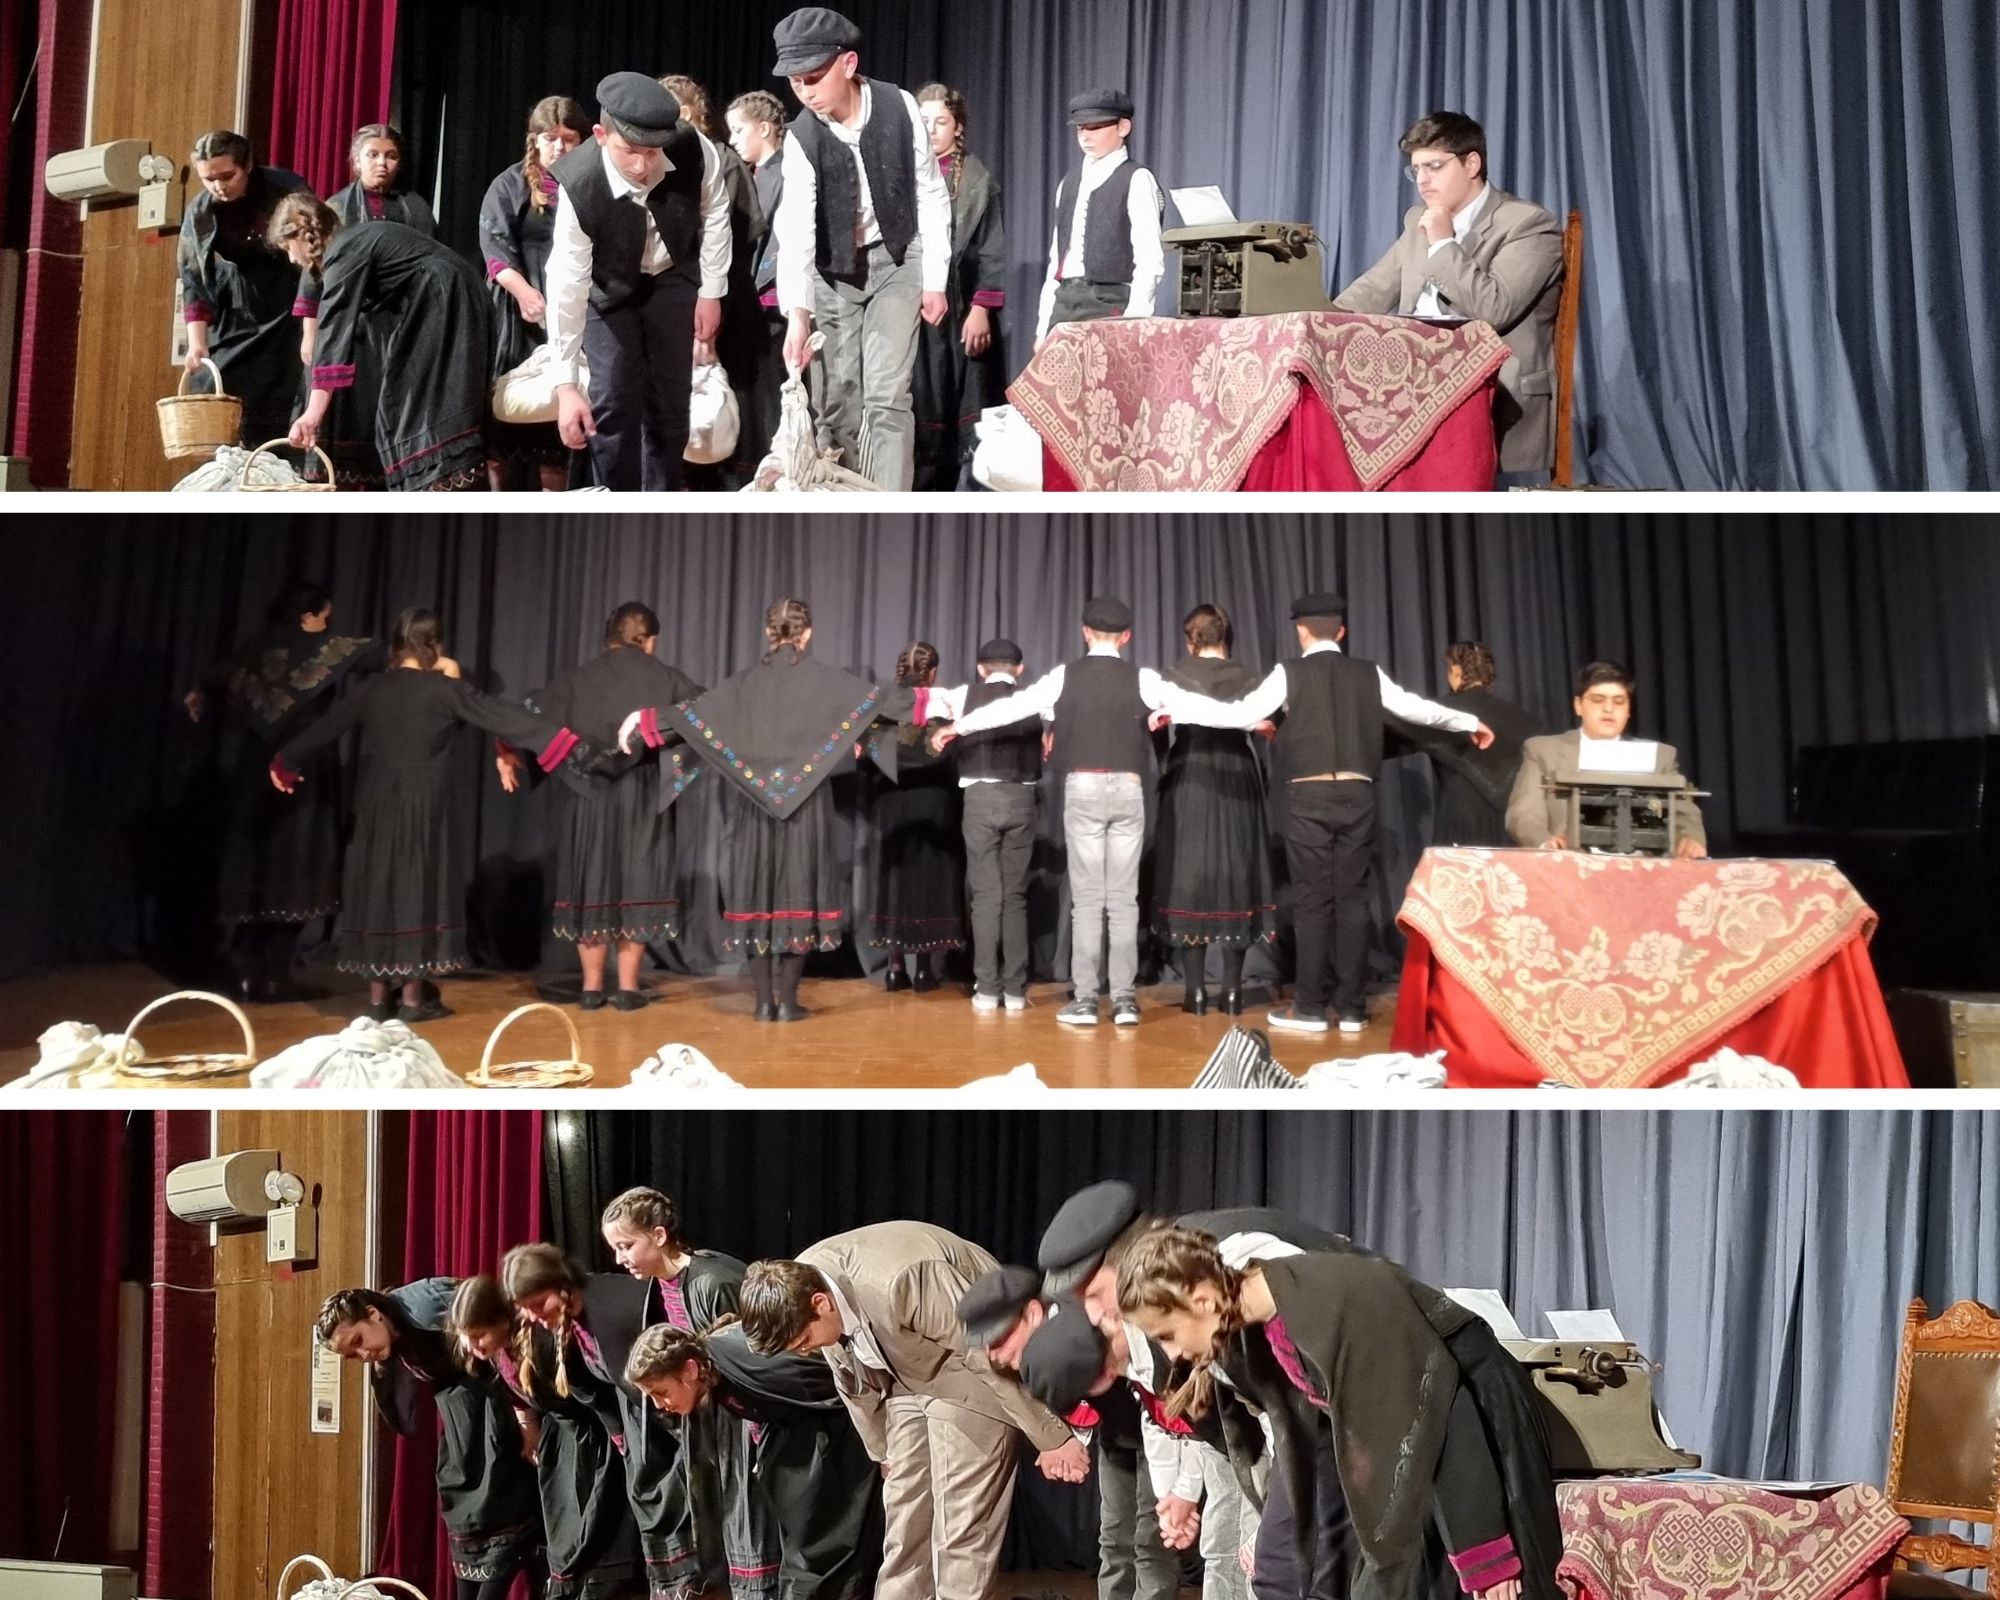 Προώθηση της κοινωνικής και πολιτιστικής ταυτότητας της Ηπείρου μέσω της Θεατρικής Εκδήλωσης αφιέρωμα στην ποίηση του Κωνσταντίνου Κρυστάλλη